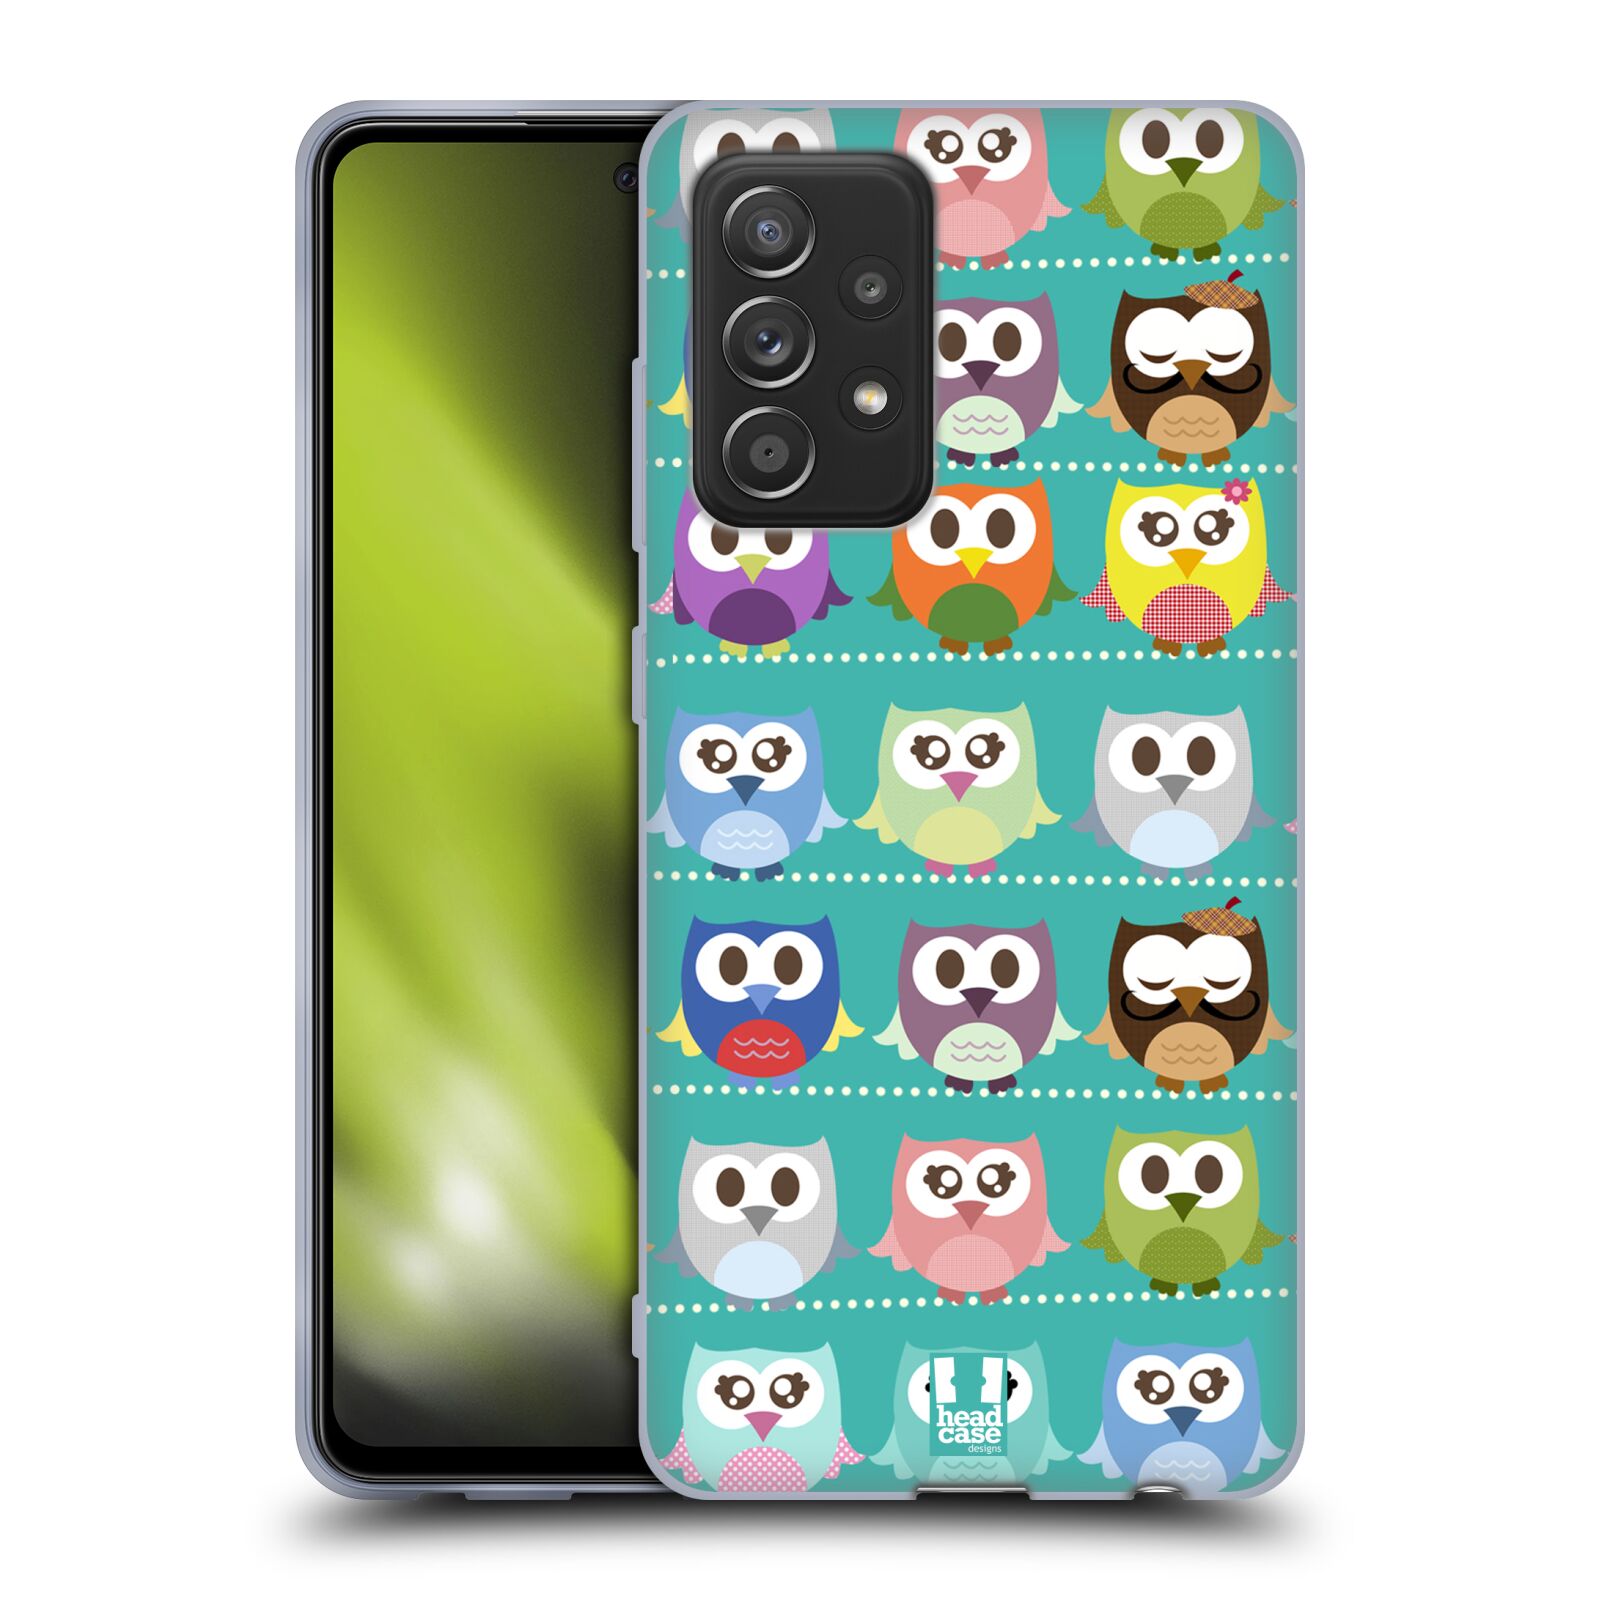 Plastový obal HEAD CASE na mobil Samsung Galaxy A52 / A52 5G / A52s 5G vzor Roztomilá sovička zelené sovičky